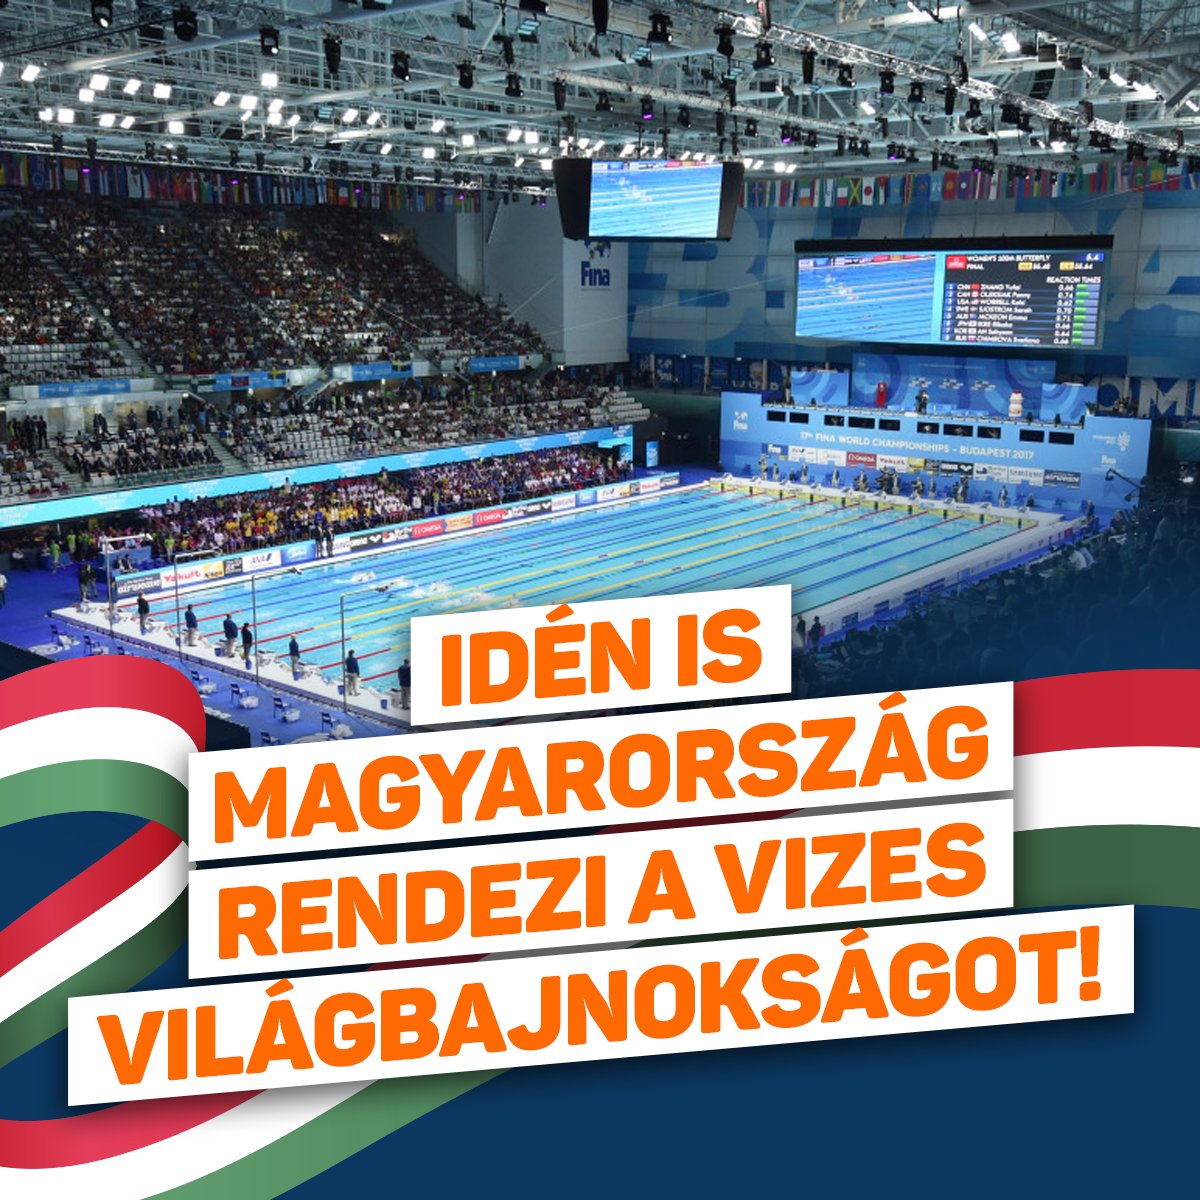 Ismét Magyarország rendezheti a vizes világbajnokságot!